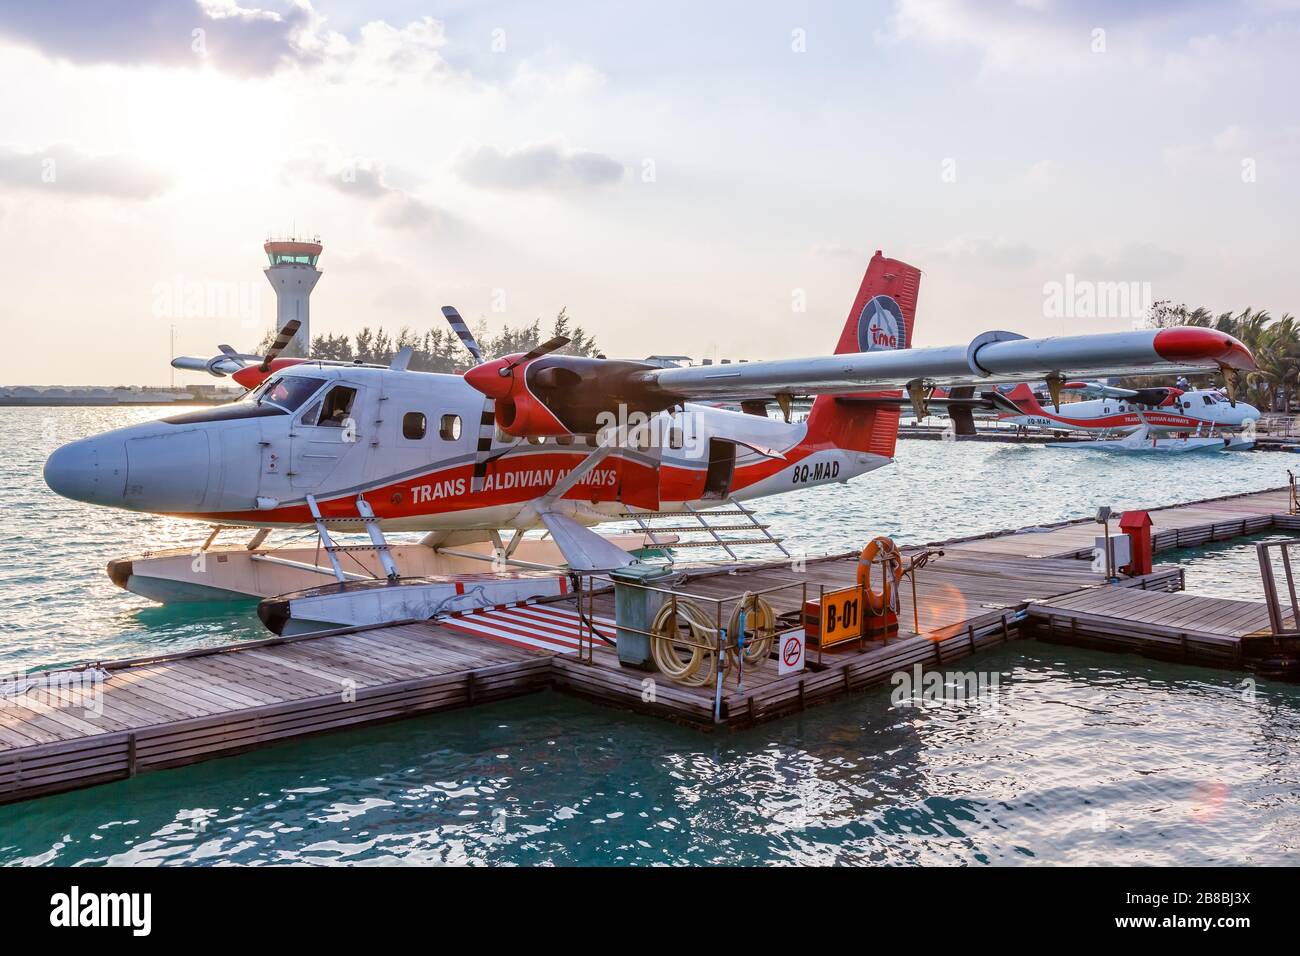 Male, Maldives – February 20, 2018: TMA - Trans Maldivian Airways De Havilland Canada DHC-6-300 Twin Otter seaplane at Male airport (MLE) in the Maldi Stock Photo